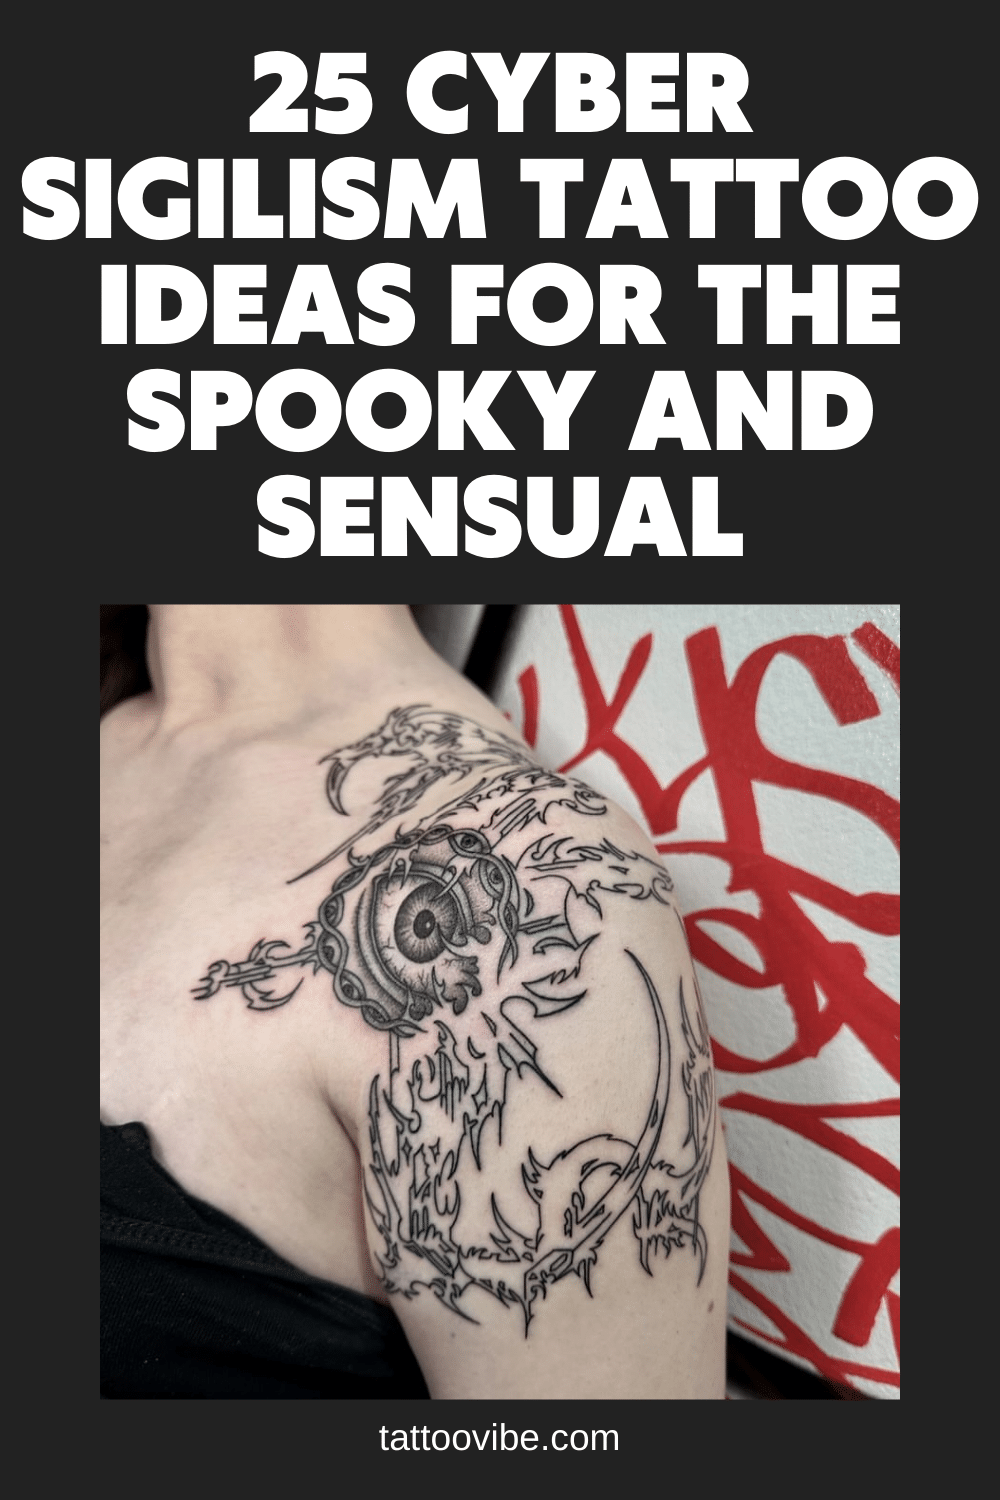 25 idées de tatouages de cyber-sigilisme pour les personnes effrayées et sensuelles